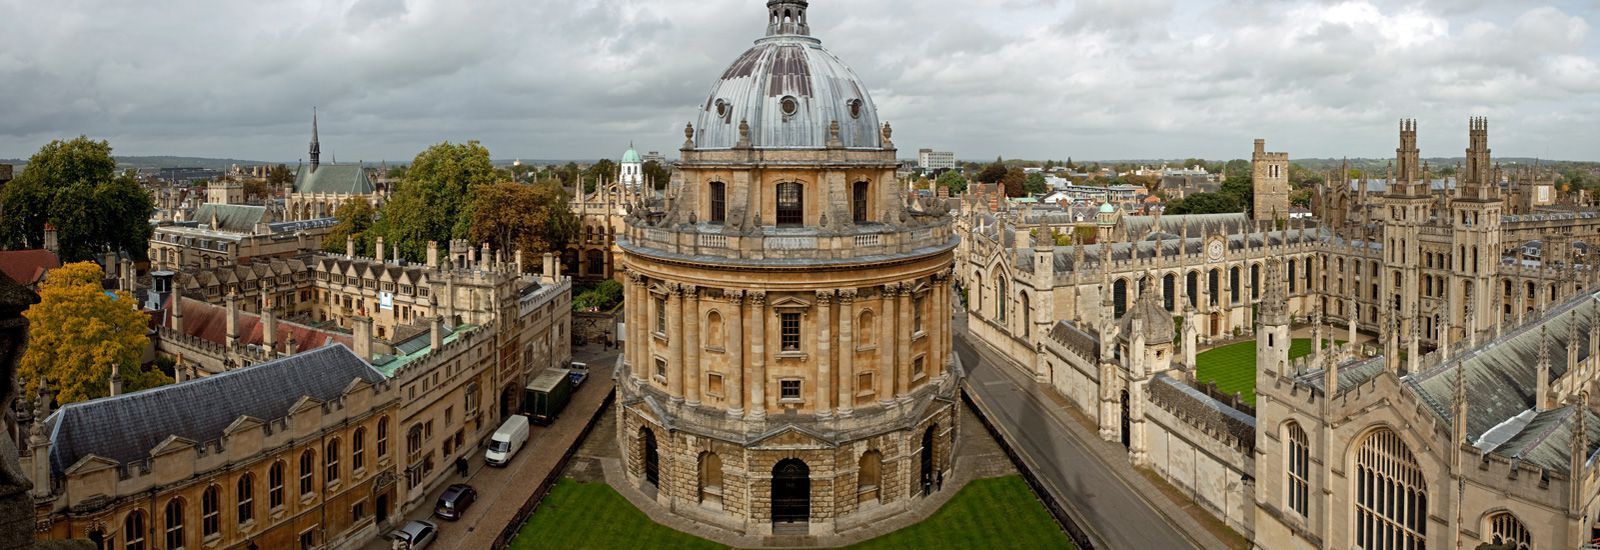 جامعة أكسفورد - دورات تدريبية مجانية عن بُعد في جامعة أكسفورد